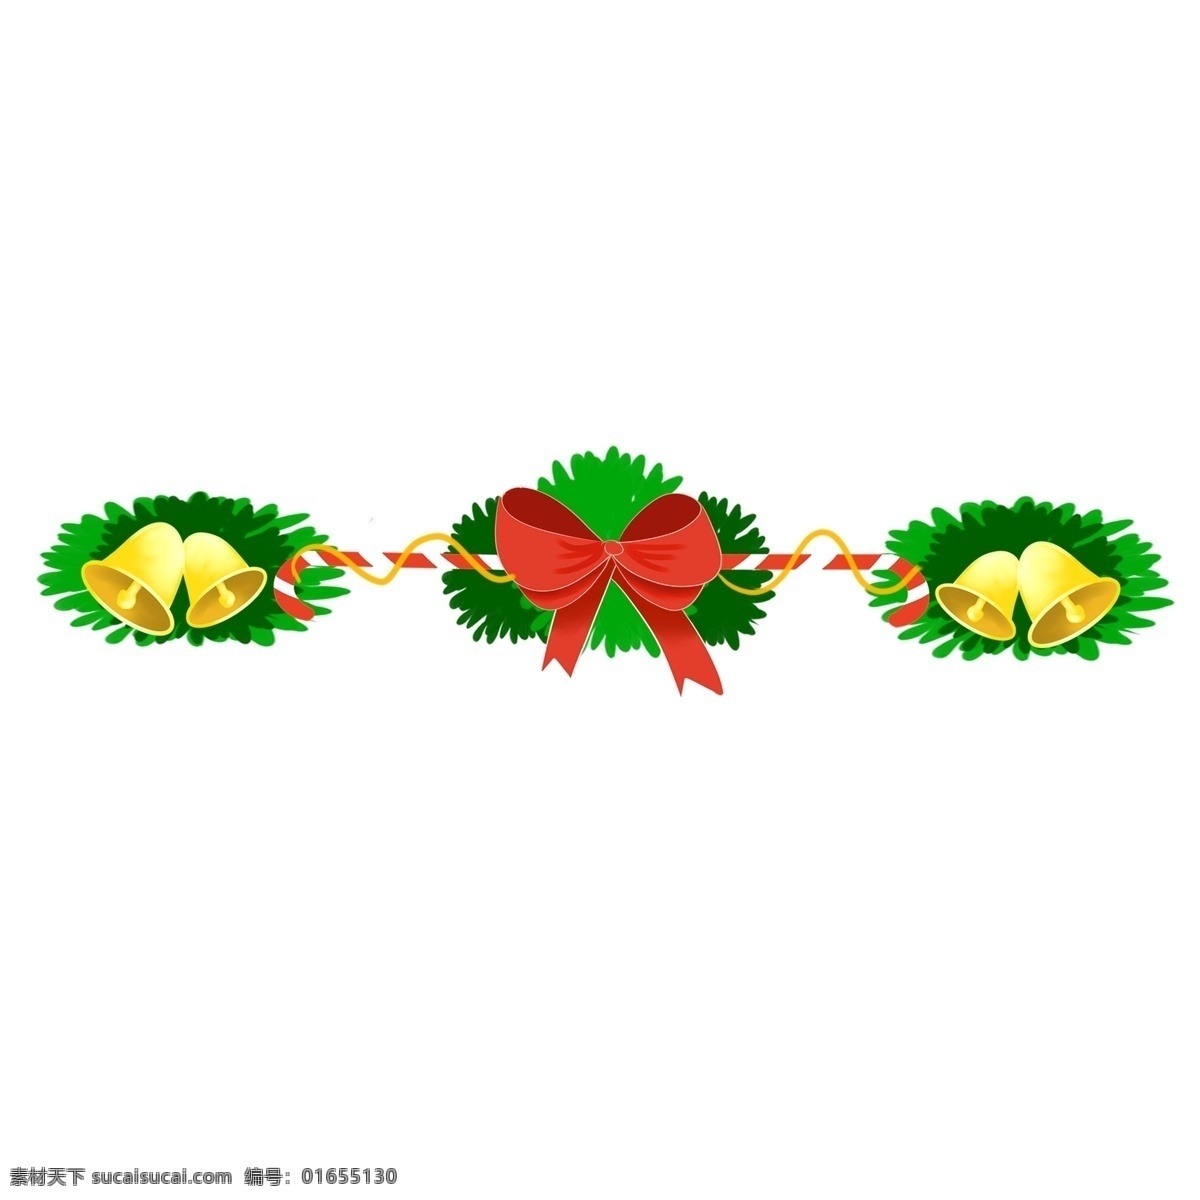 圣诞节 铃铛 边框 插画 圣诞节边框 绿色的边框 红色的蝴蝶结 边框插画 黄色的铃铛 悦耳的铃声